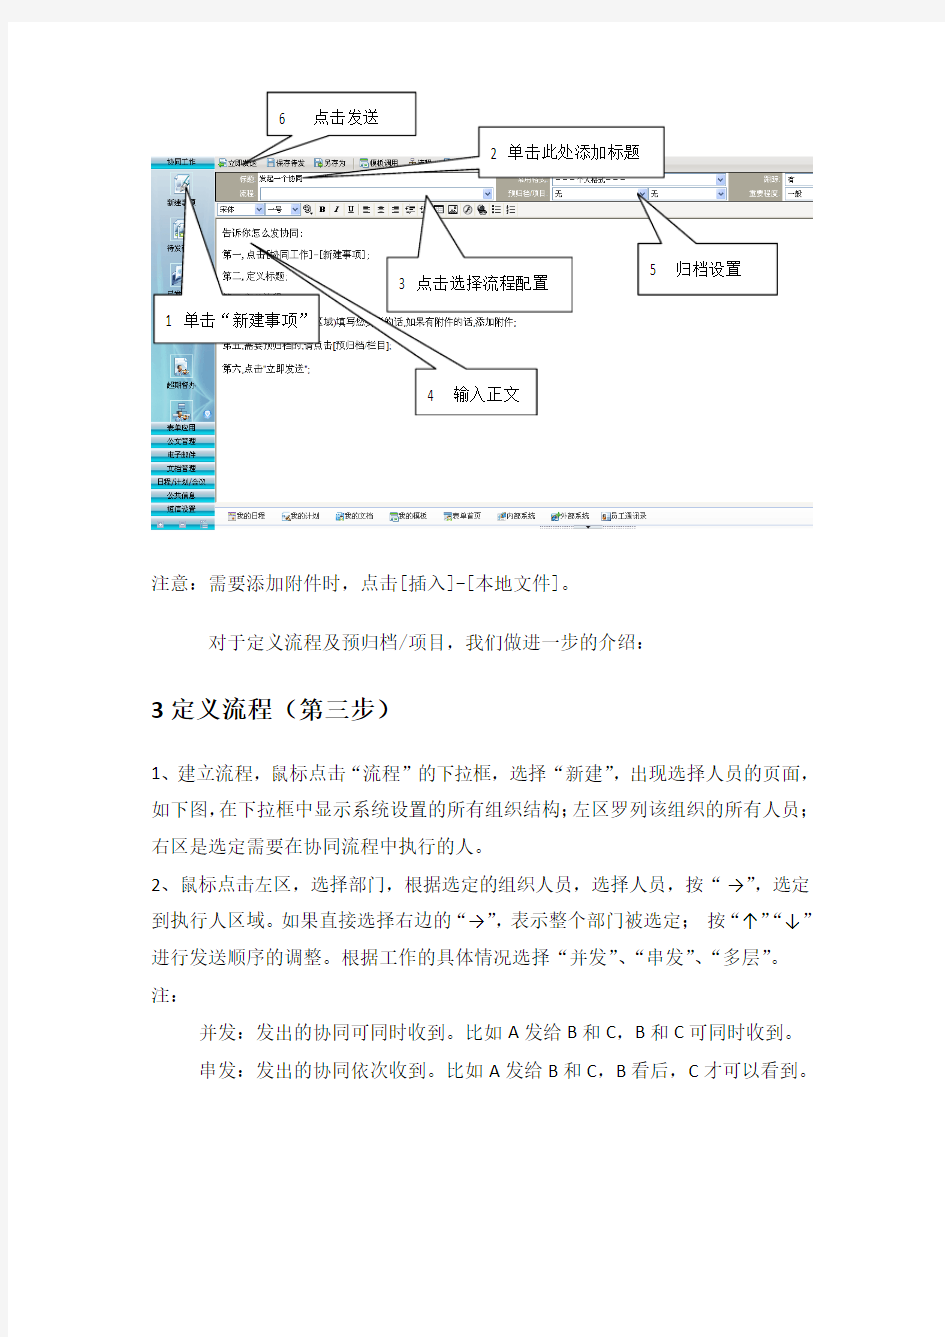 汾西矿业集团OA协同操作手册